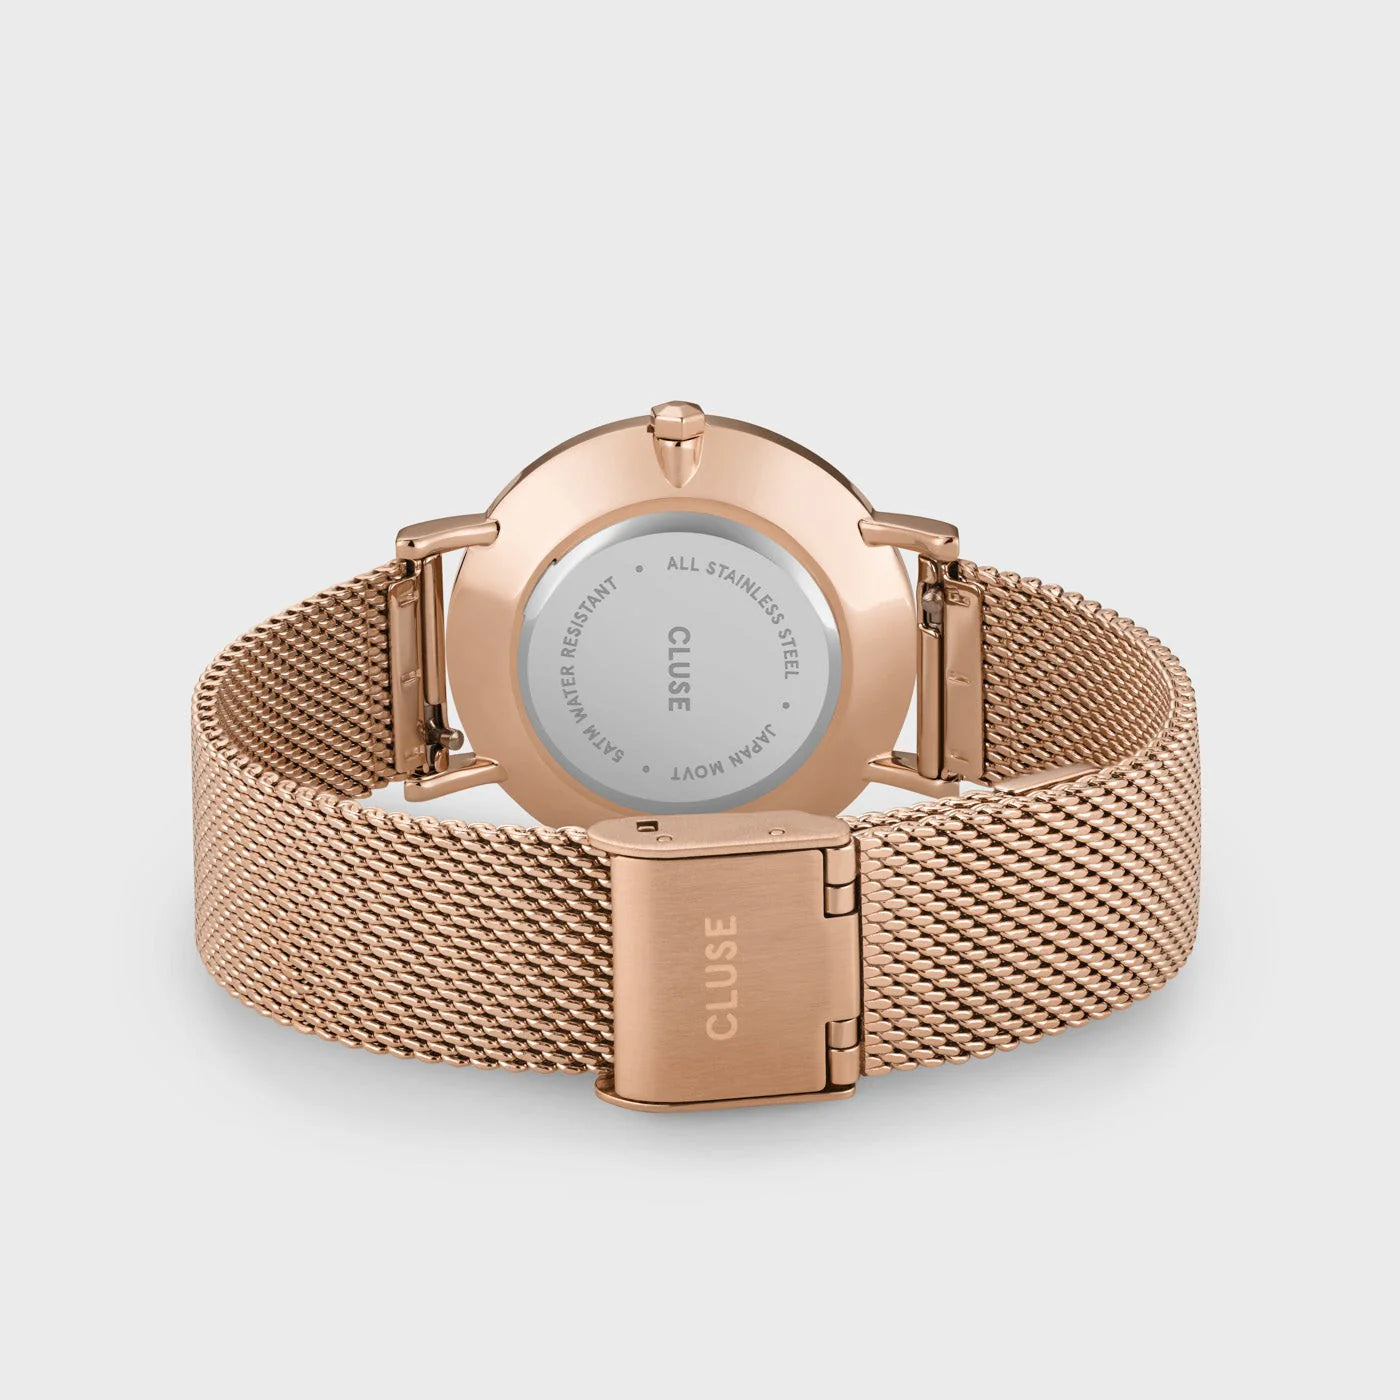 Gehäuseboden und Mesh-Armband der Cluse Stahl-Uhr "Minuit Mesh" in roségoldener Farbe mit einem grau-braunen Zifferblatt